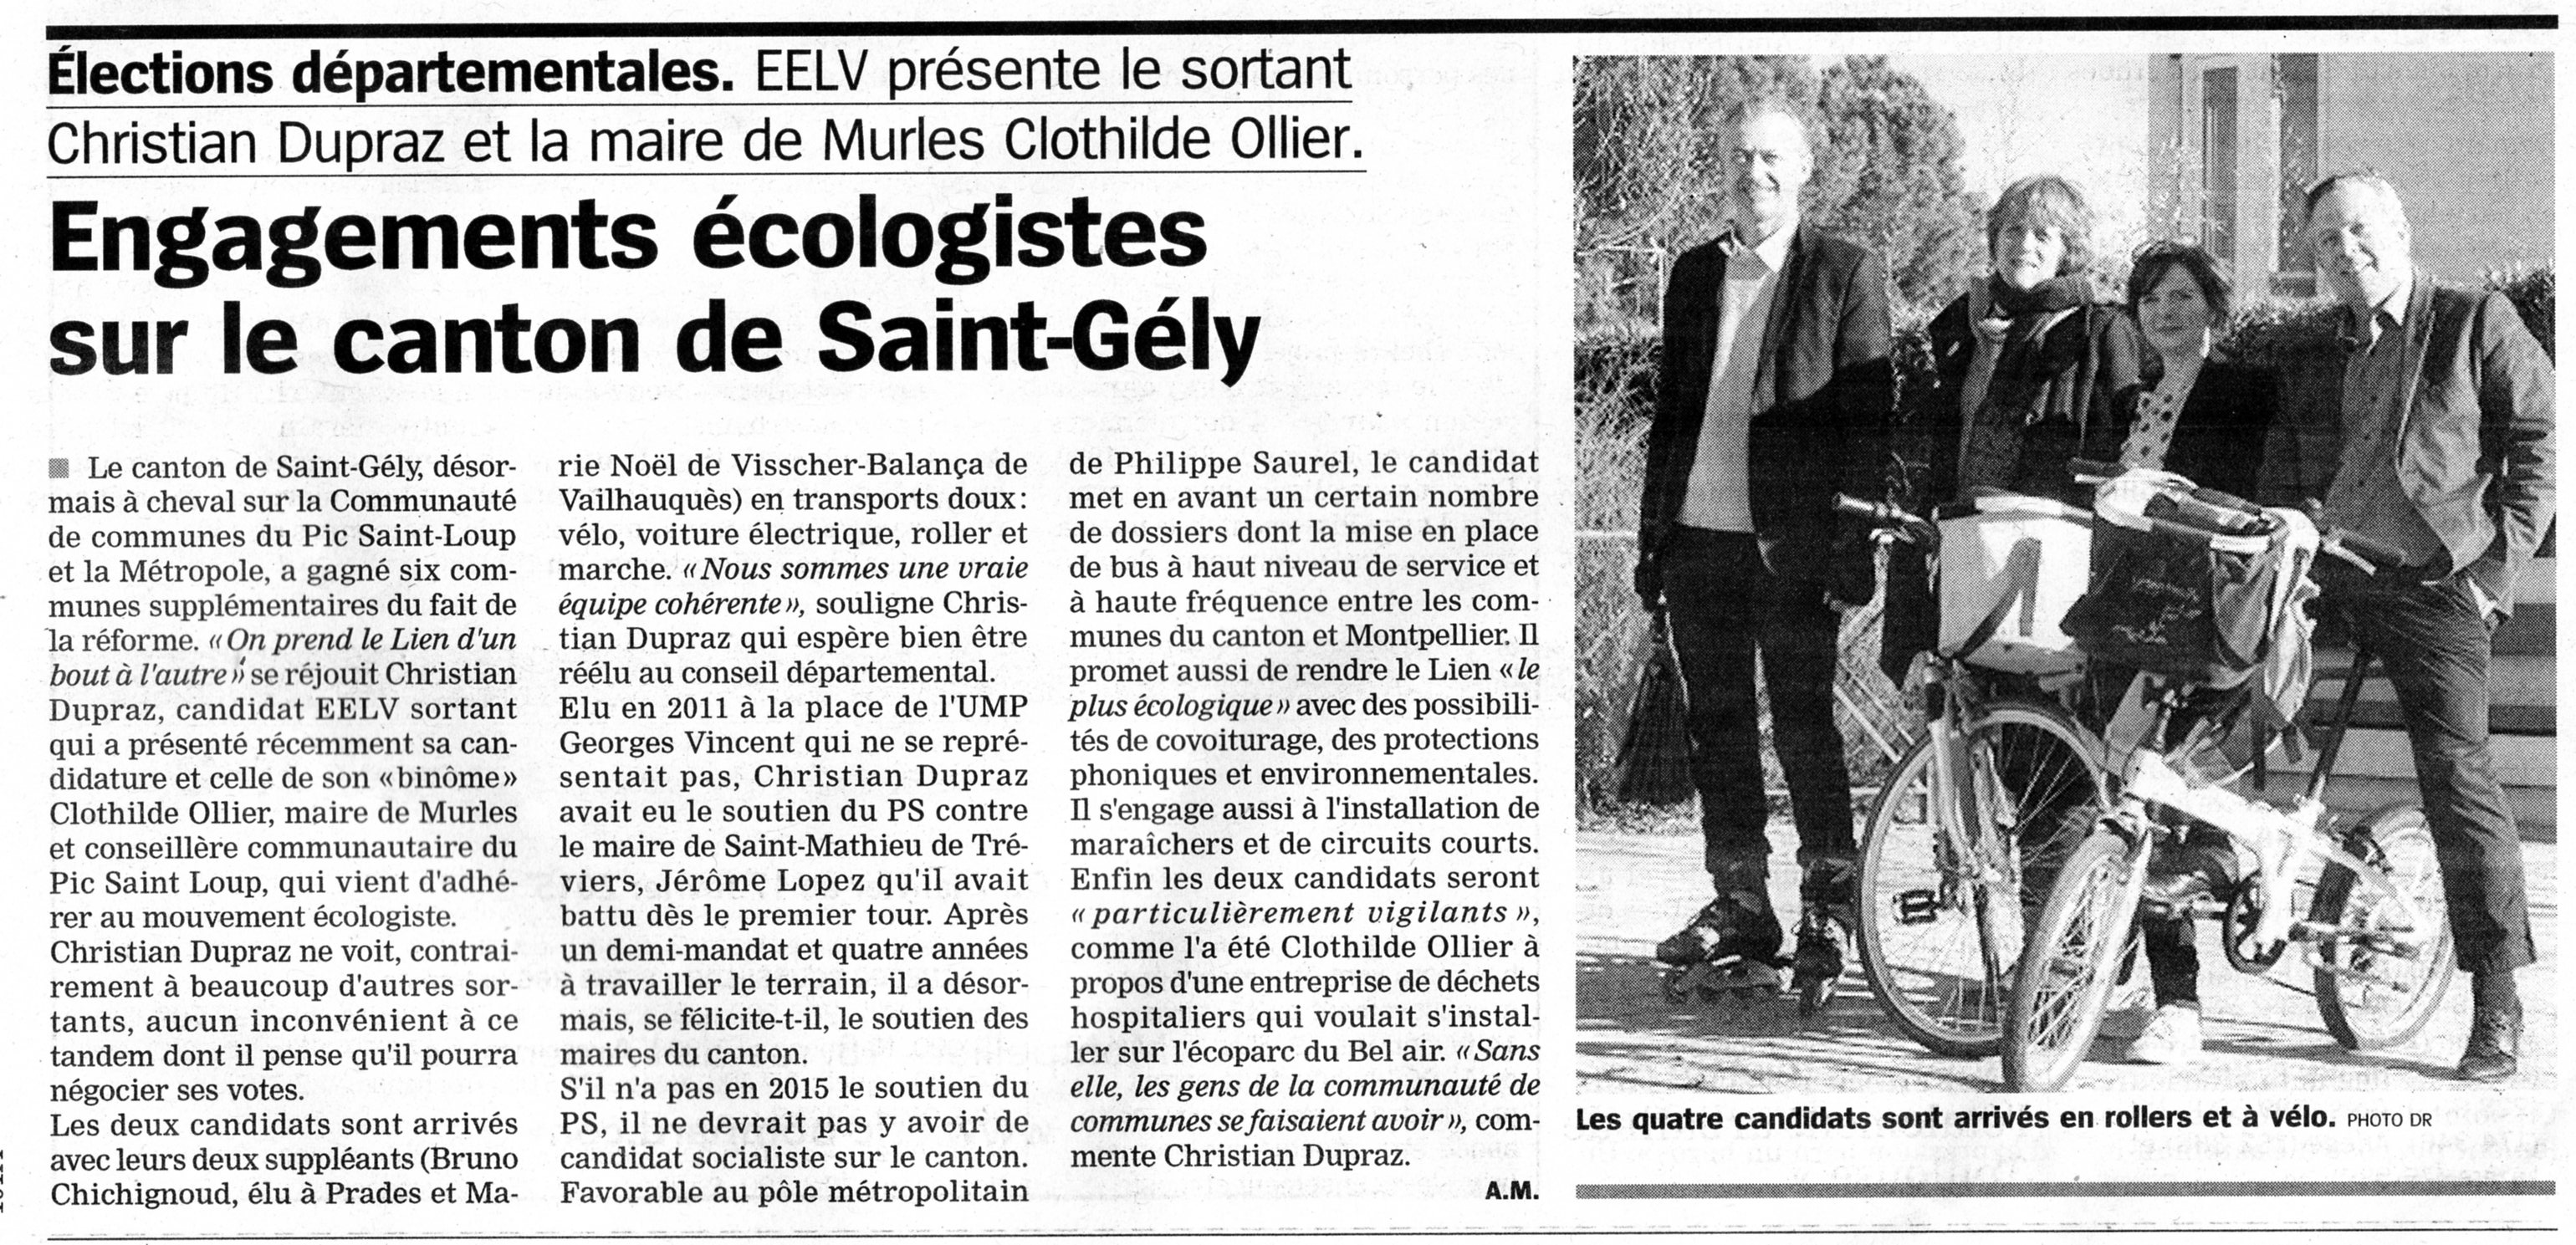 HDJ 14 01 2015 Lancement campagne EELV Saint-Gely